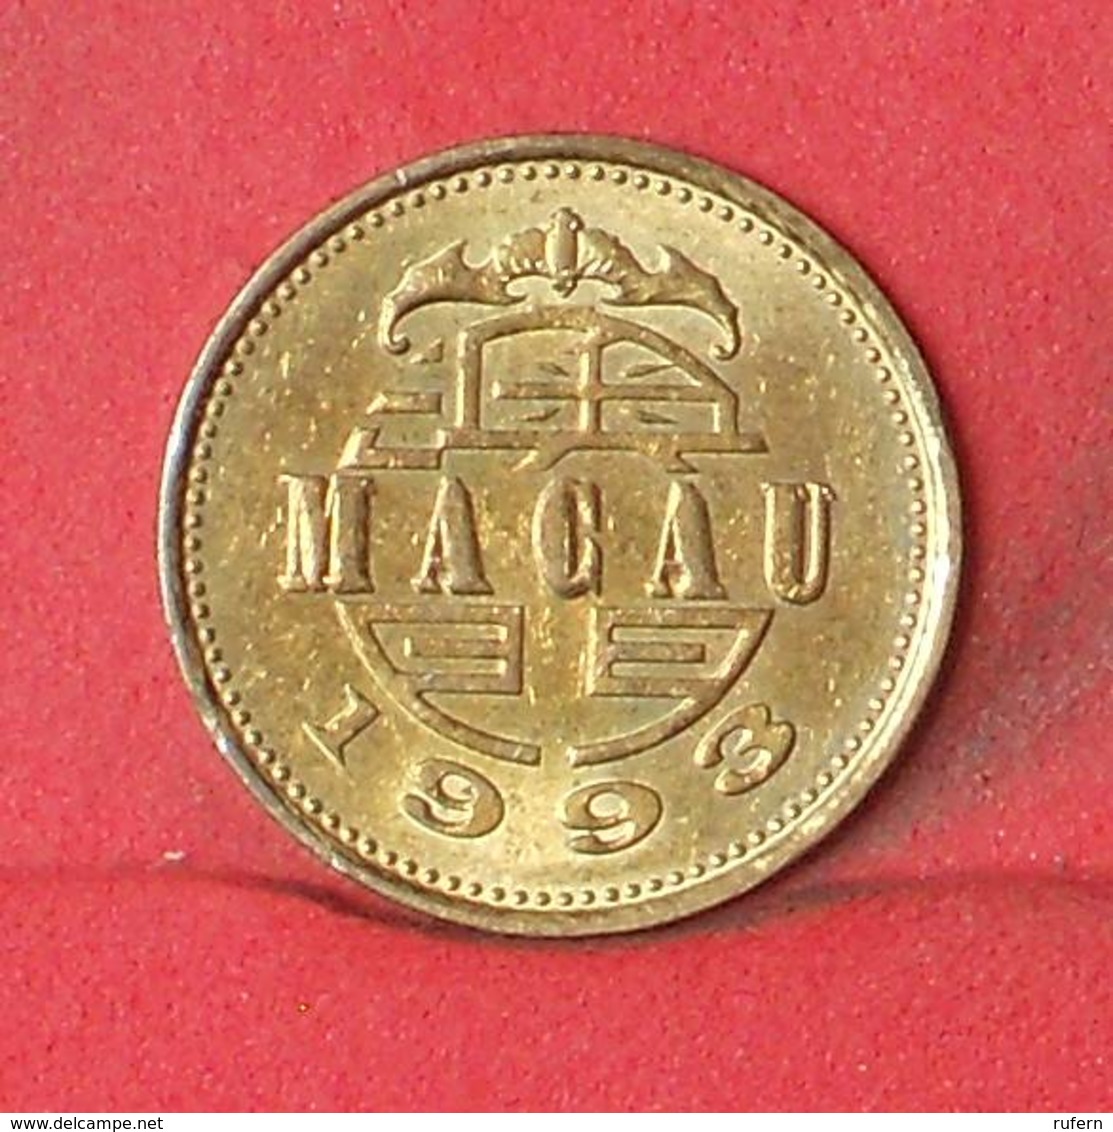 MACAU 10 AVOS 1993 -    KM# 70 - (Nº35198) - Macau